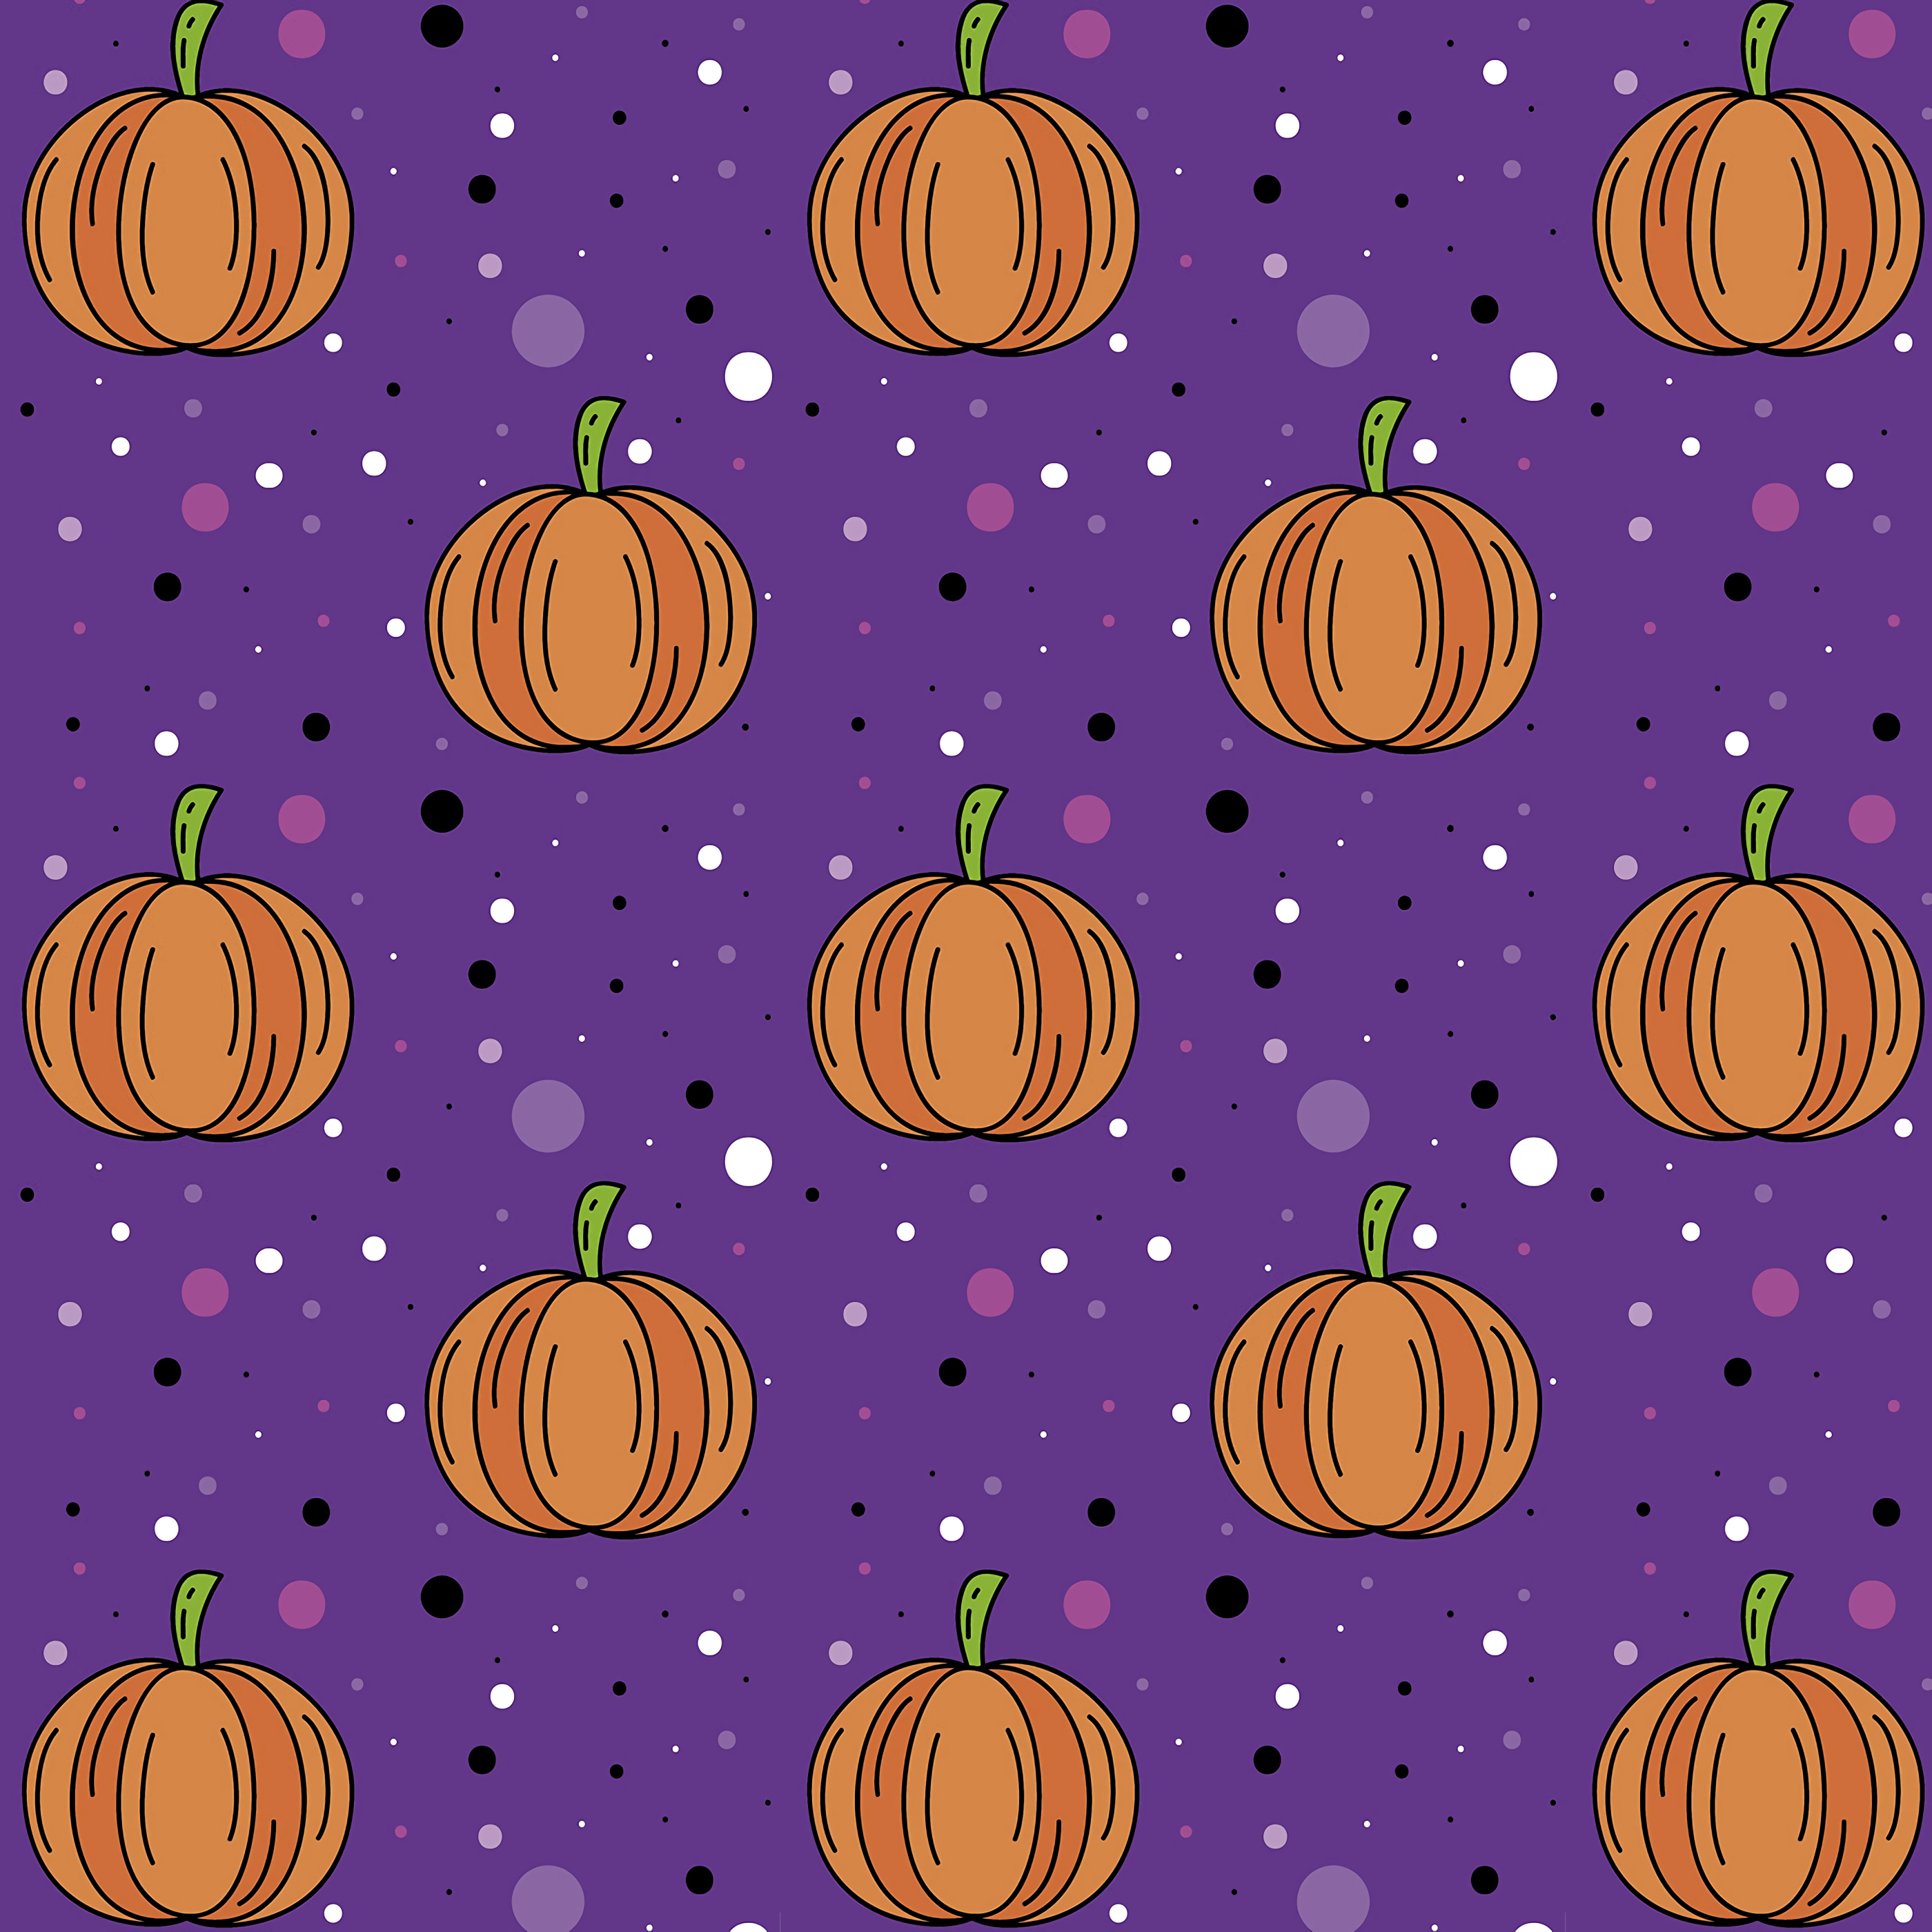 1080p Pumpkin Wallpaper